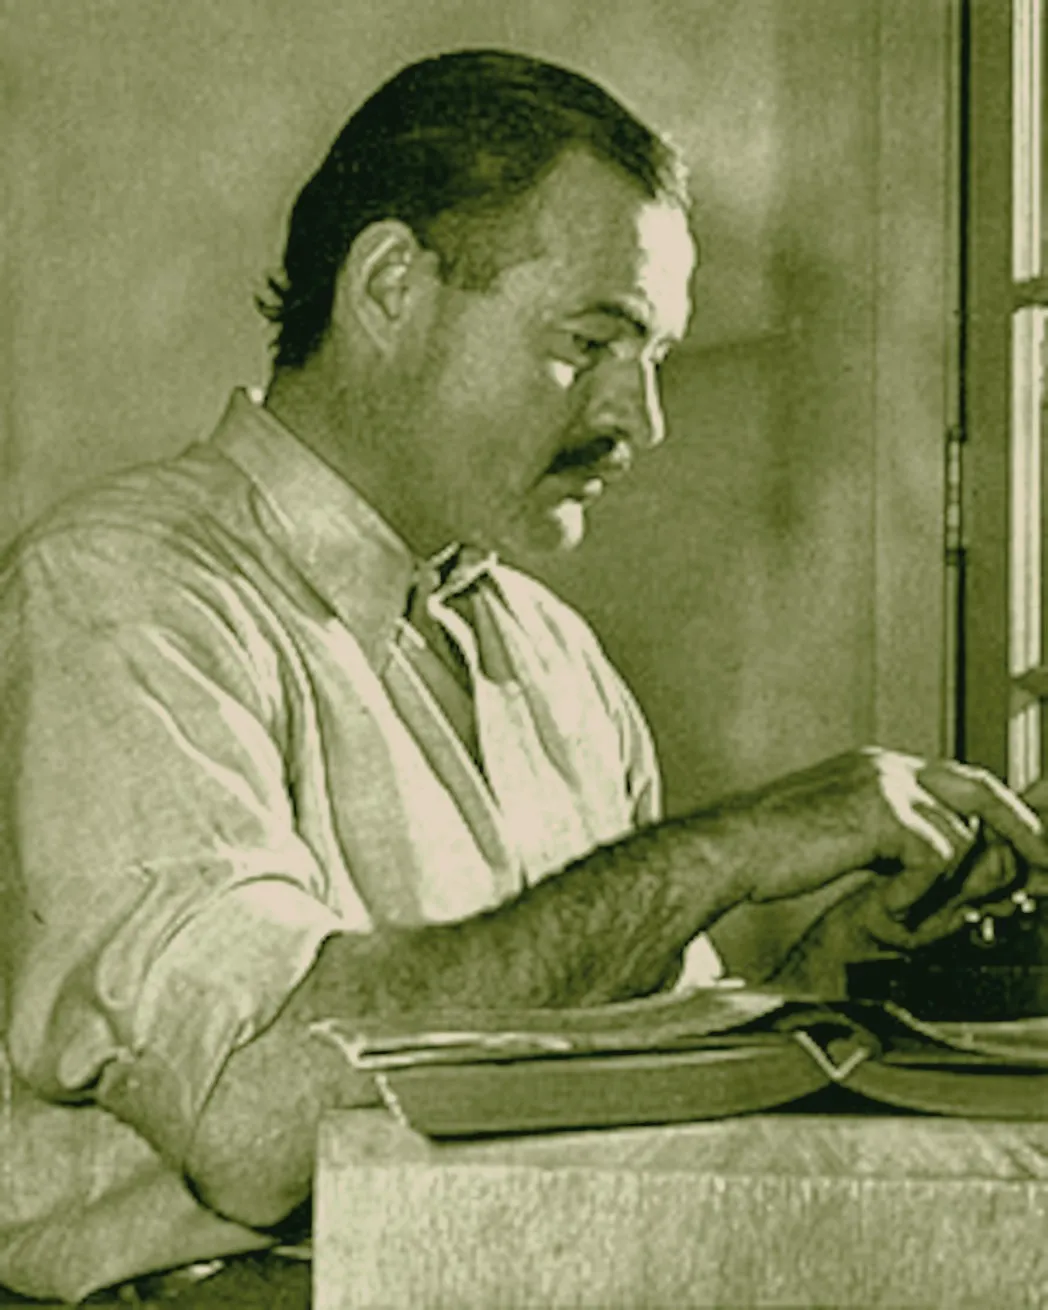 Hemingway writing on typewriter